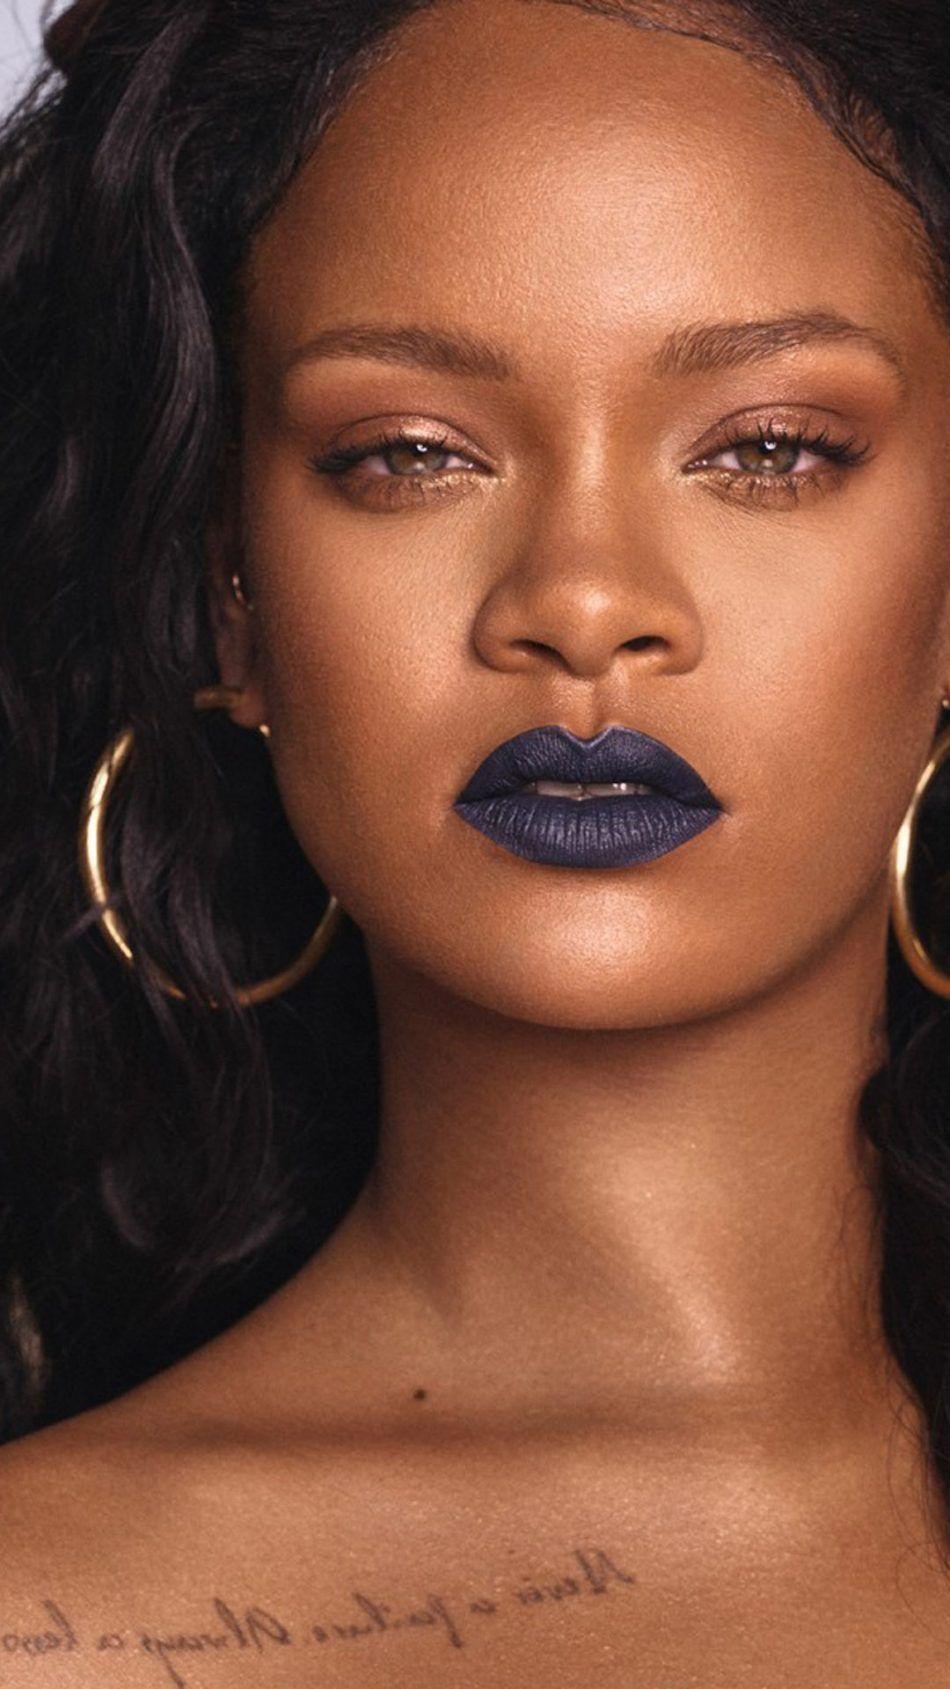 Rihanna Love. Rihanna love, Rihanna, Rihanna fenty